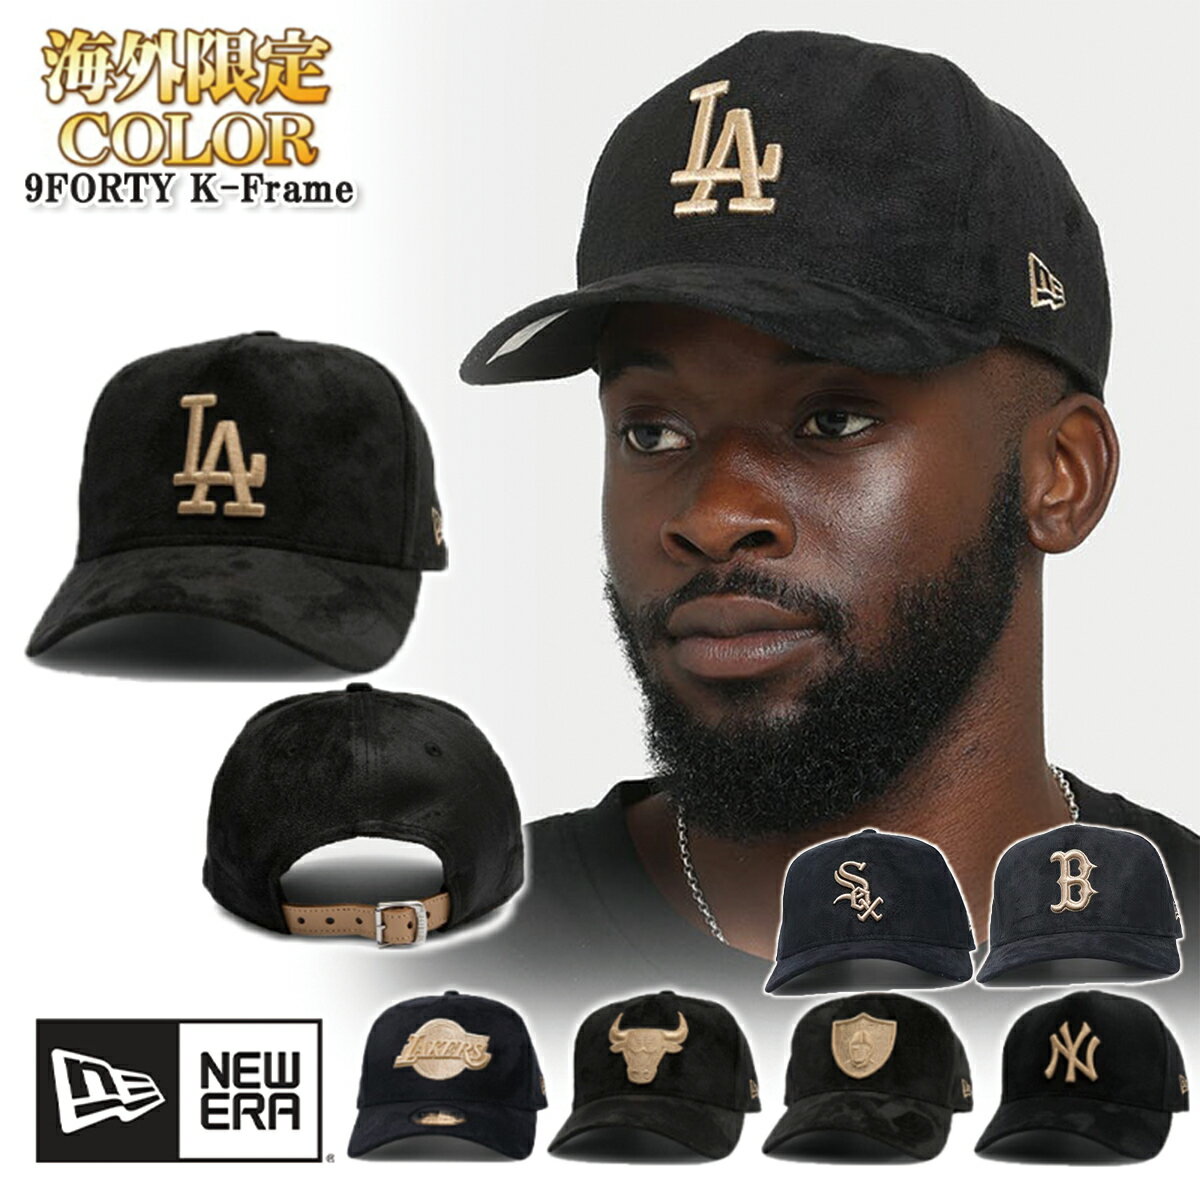 ニューエラ NEW ERA キャップ 帽子 限定モデル Suede スエード生地 9FORTY K-Frame ブラック 黒 7チーム LA NY レイカーズ ブルズ レイダース MLB NBA メンズ ユニセックス 正規品[帽子]